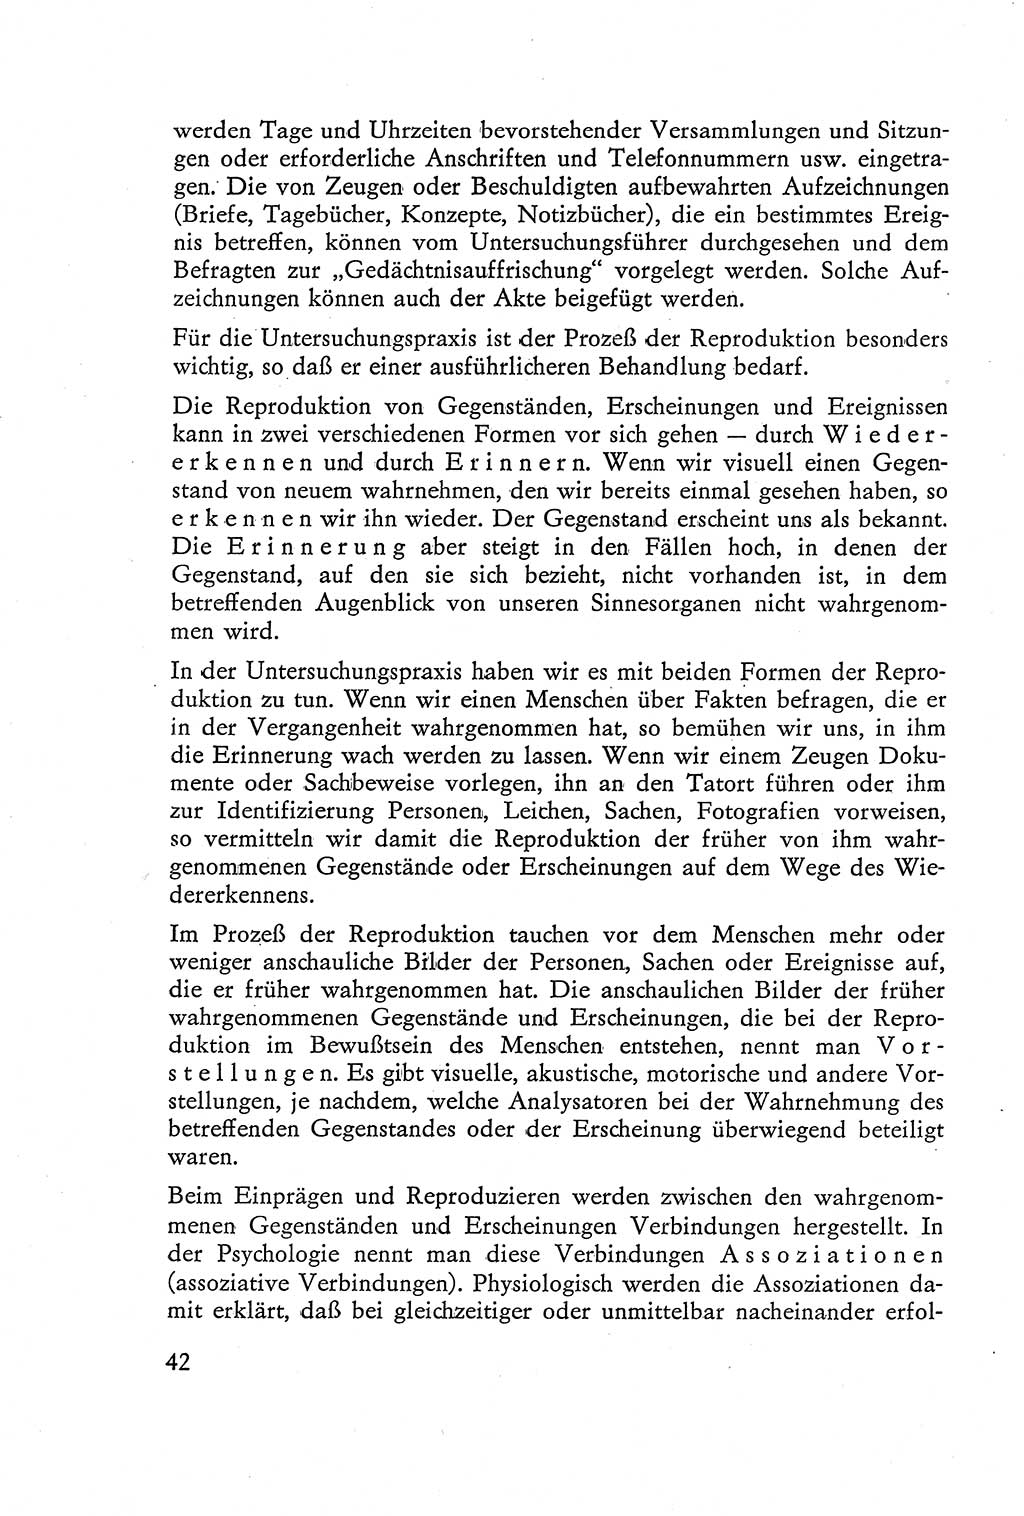 Die Vernehmung [Deutsche Demokratische Republik (DDR)] 1960, Seite 42 (Vern. DDR 1960, S. 42)